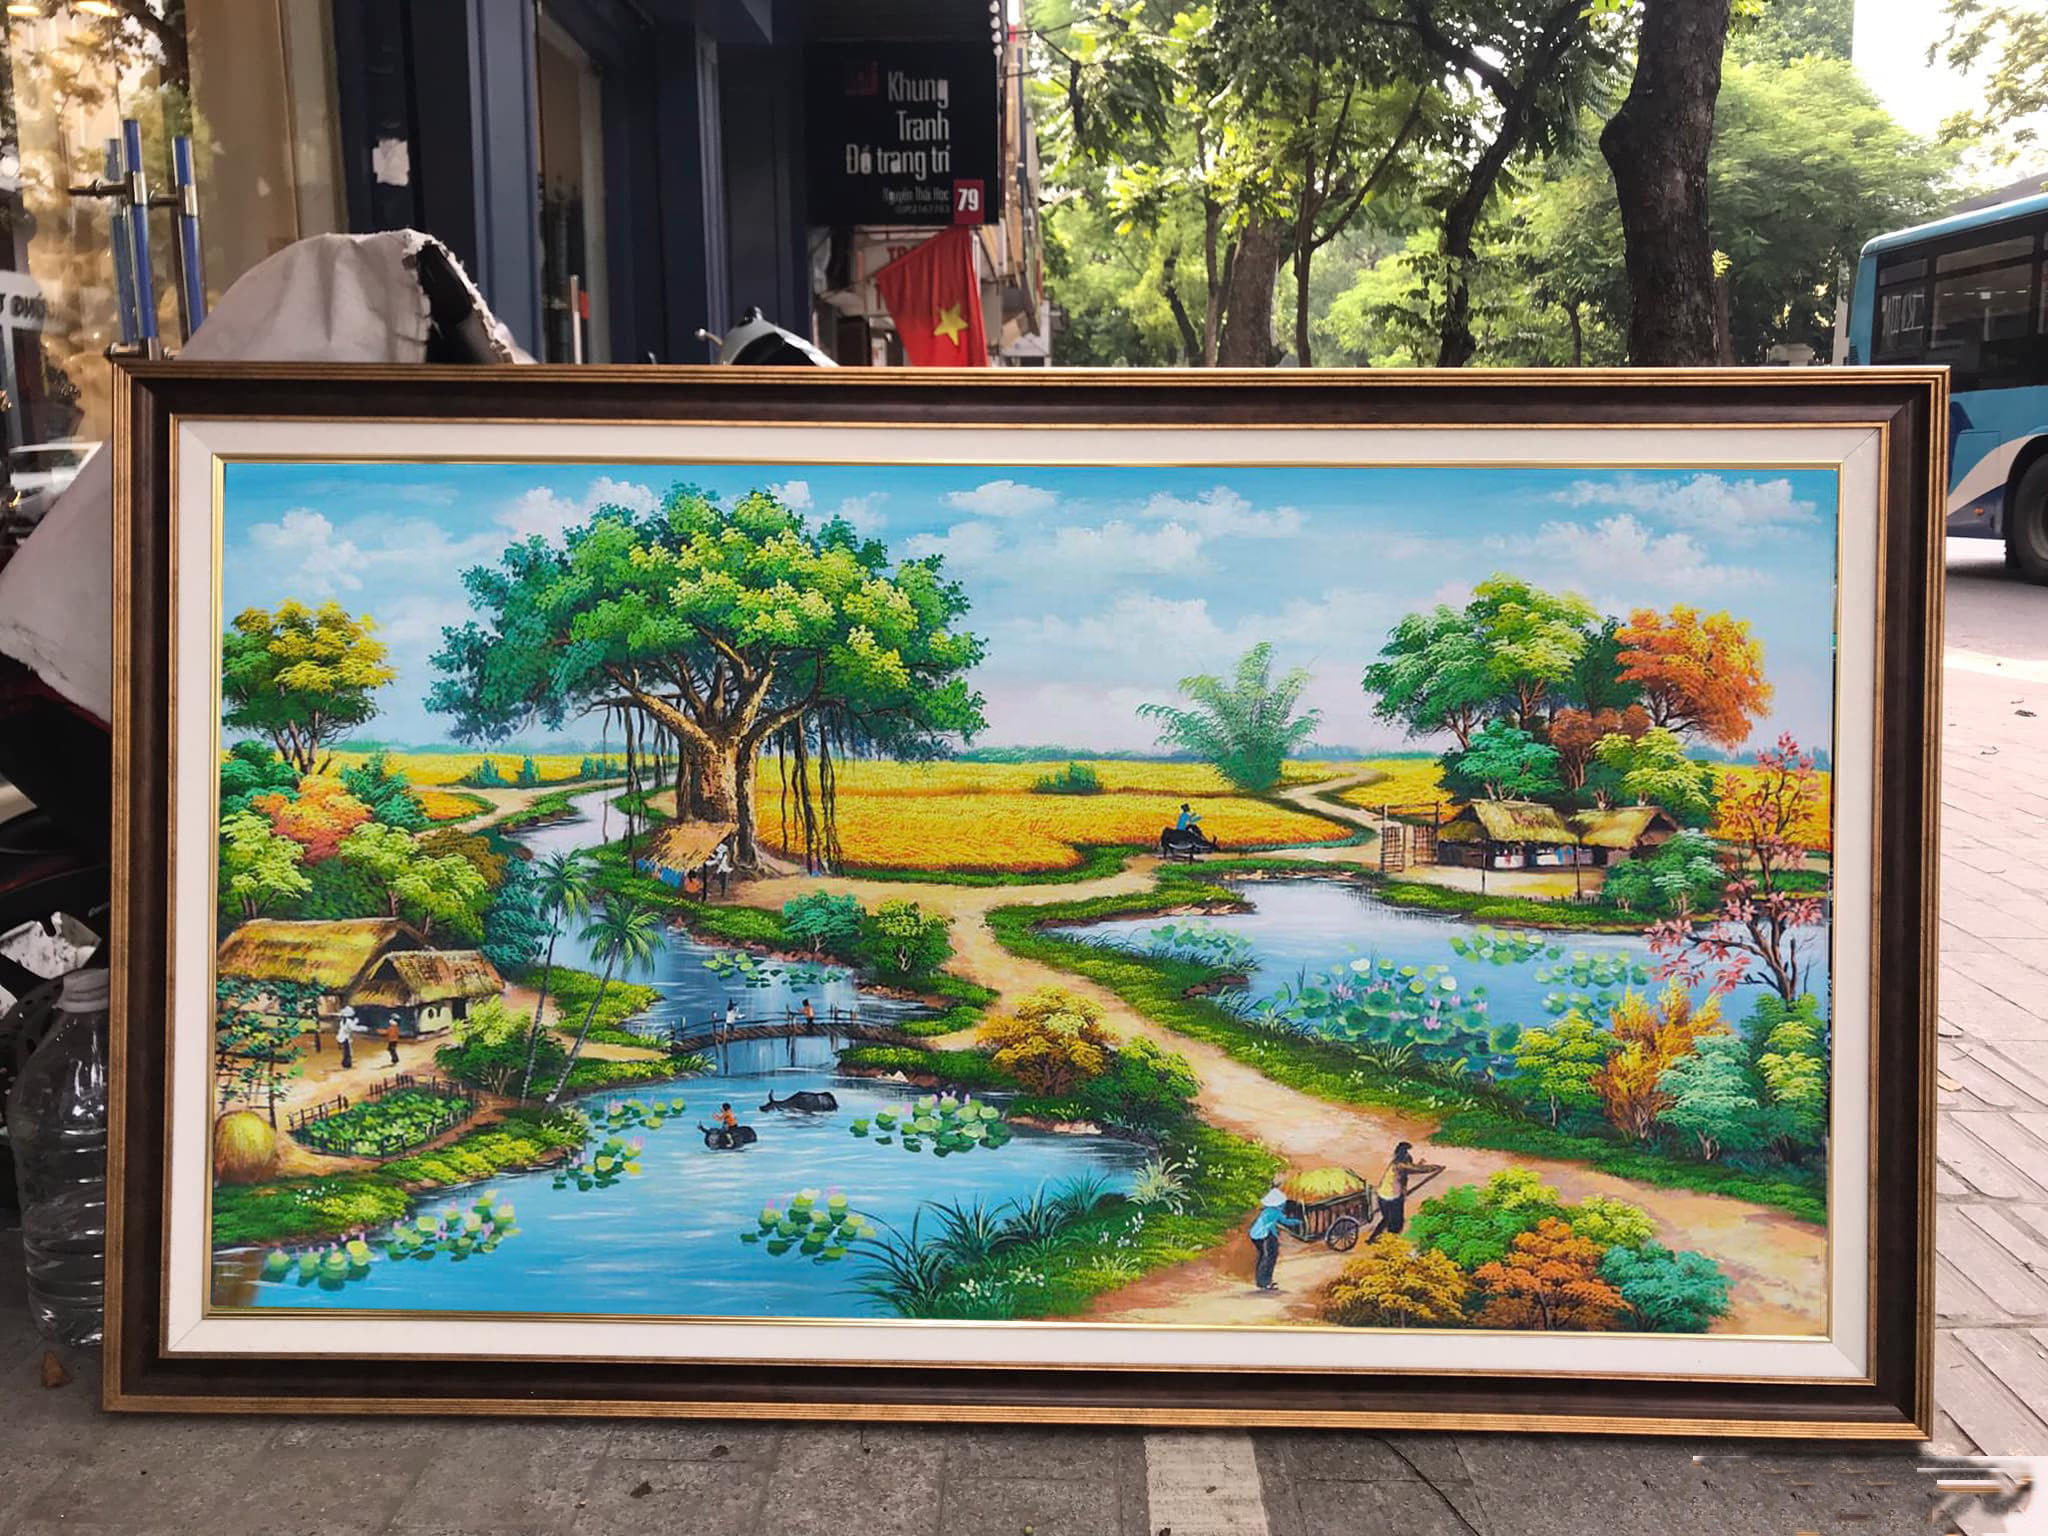 Tranh sơn dầu phong cảnh đồng quê Việt Nam của Nghệ sĩ Nguyễn sẽ đưa bạn đến với một không gian đẹp trong sáng và thanh tao. Với những đường nét mạnh mẽ và màu sắc tươi sáng, tác phẩm sẽ làm cho bạn phấn khích và ngưỡng mộ.